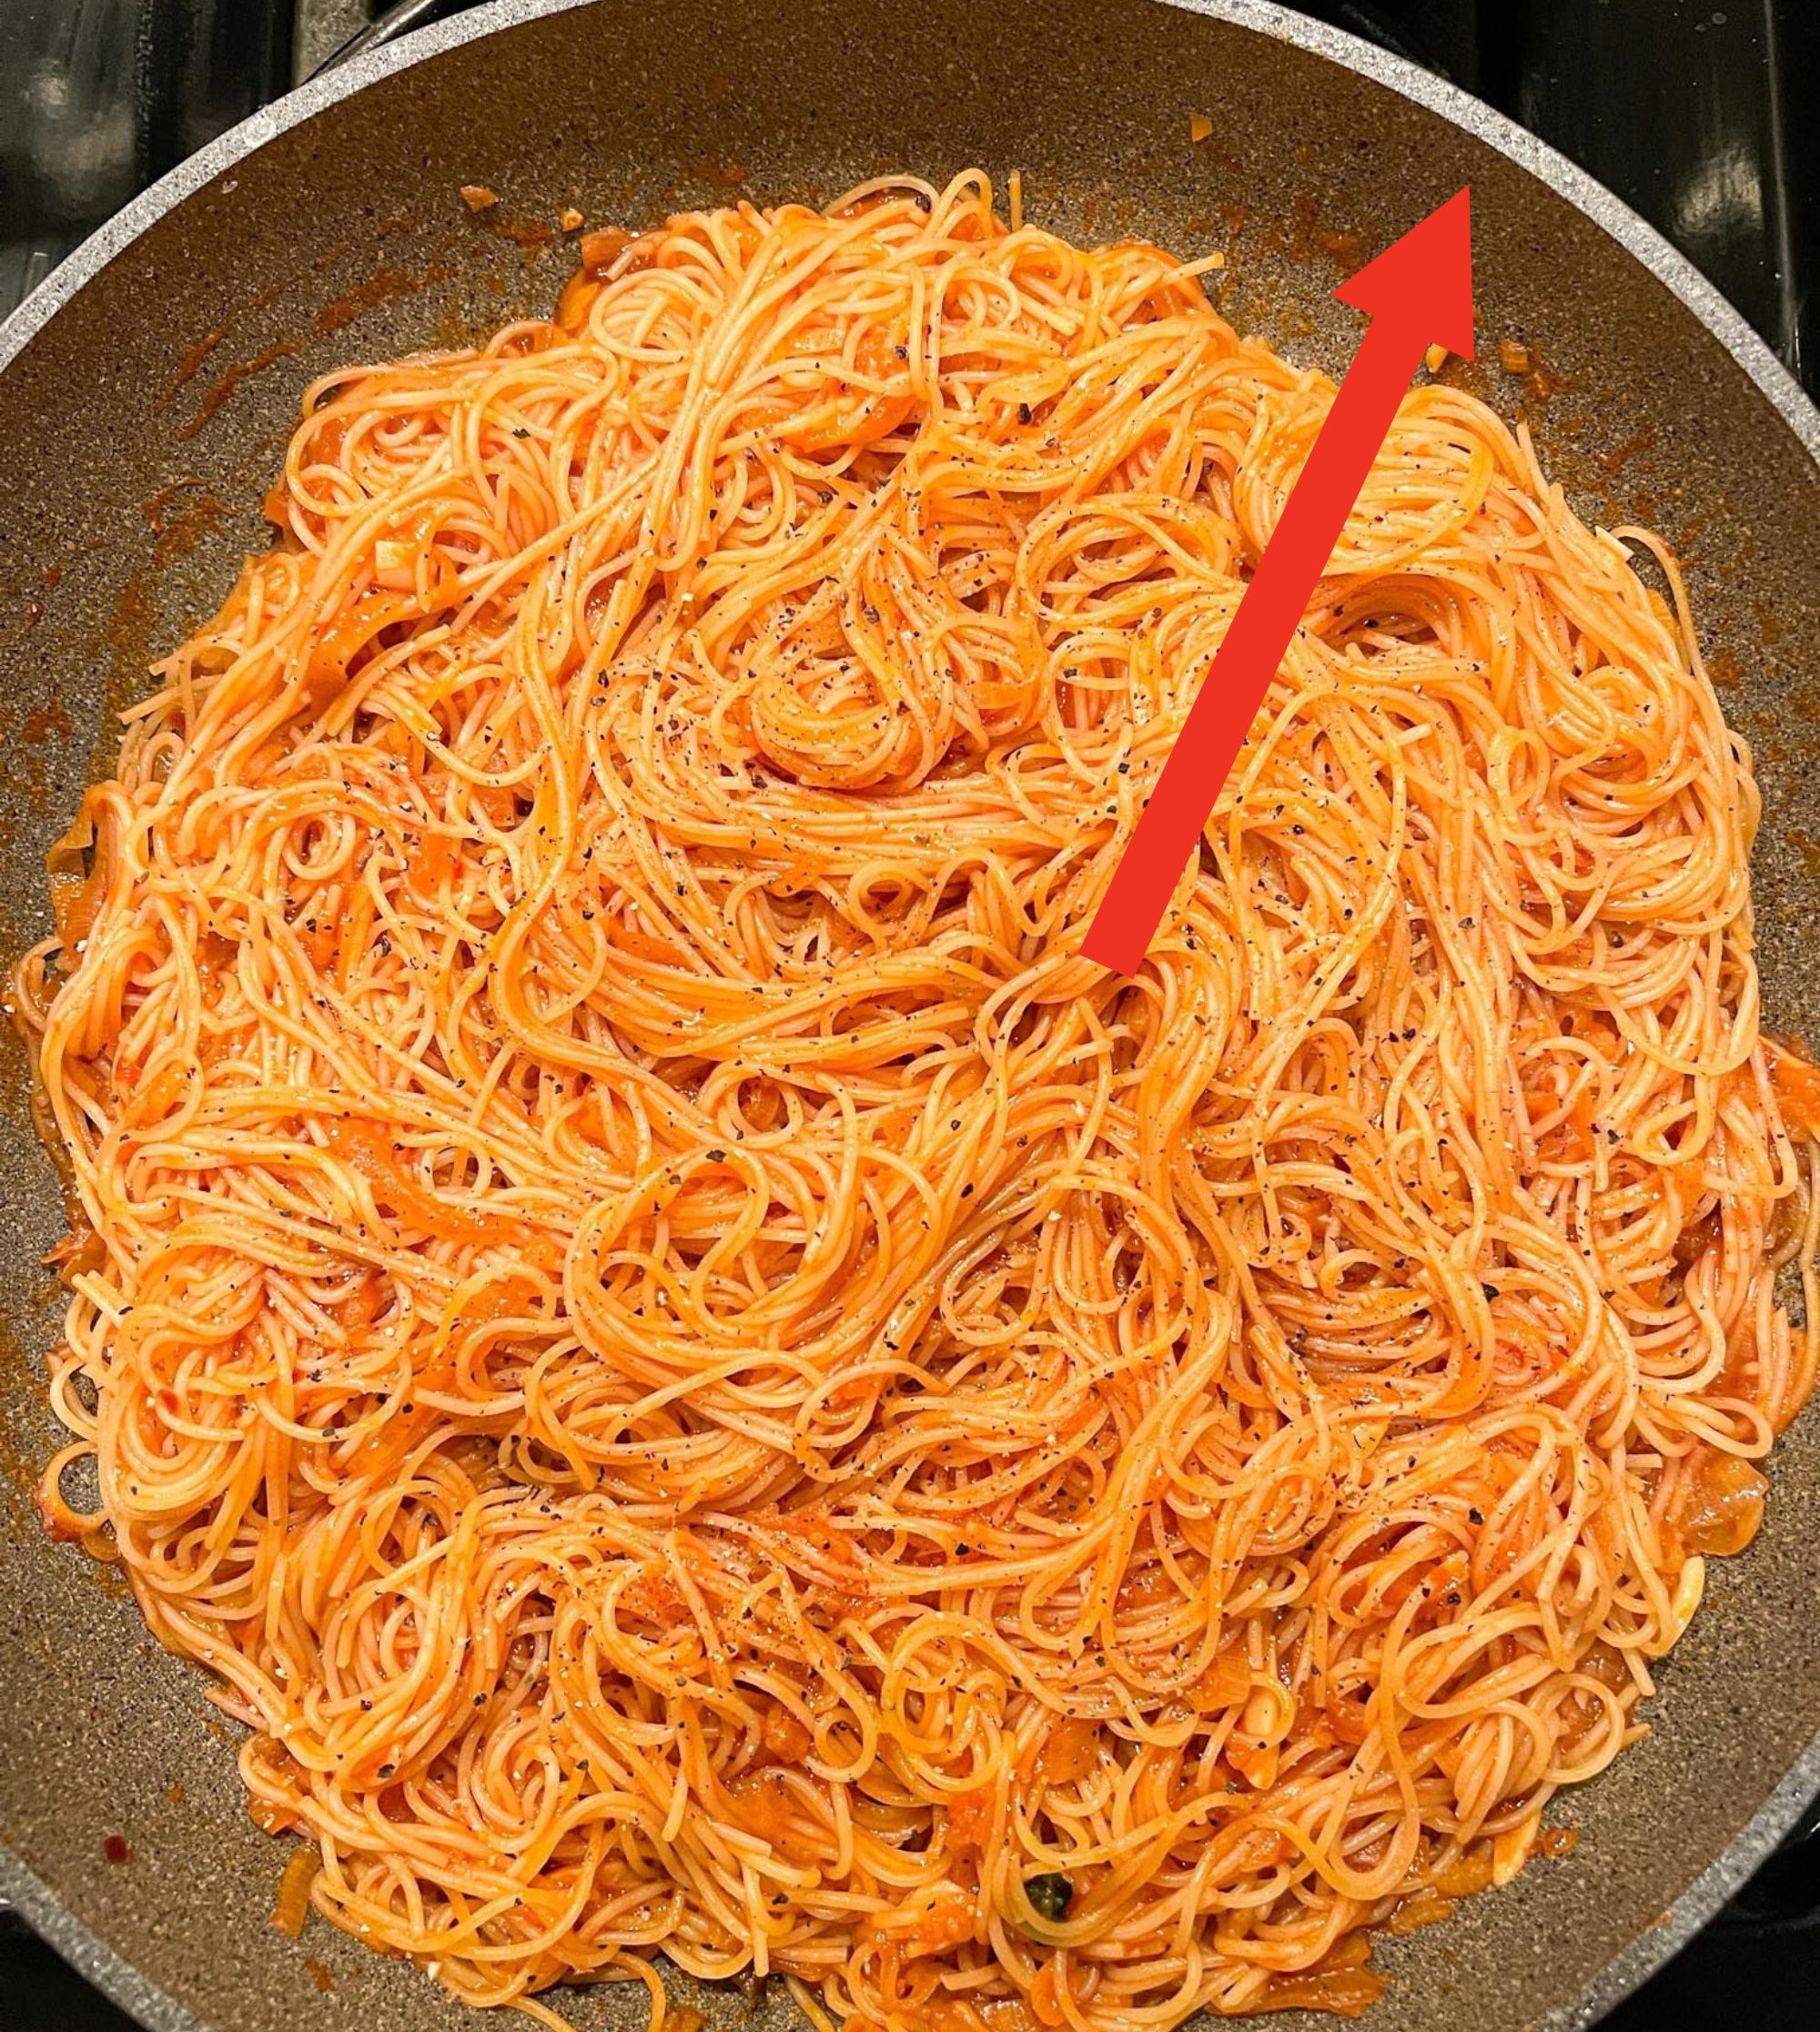 Spaghetti in a nonstick skillet